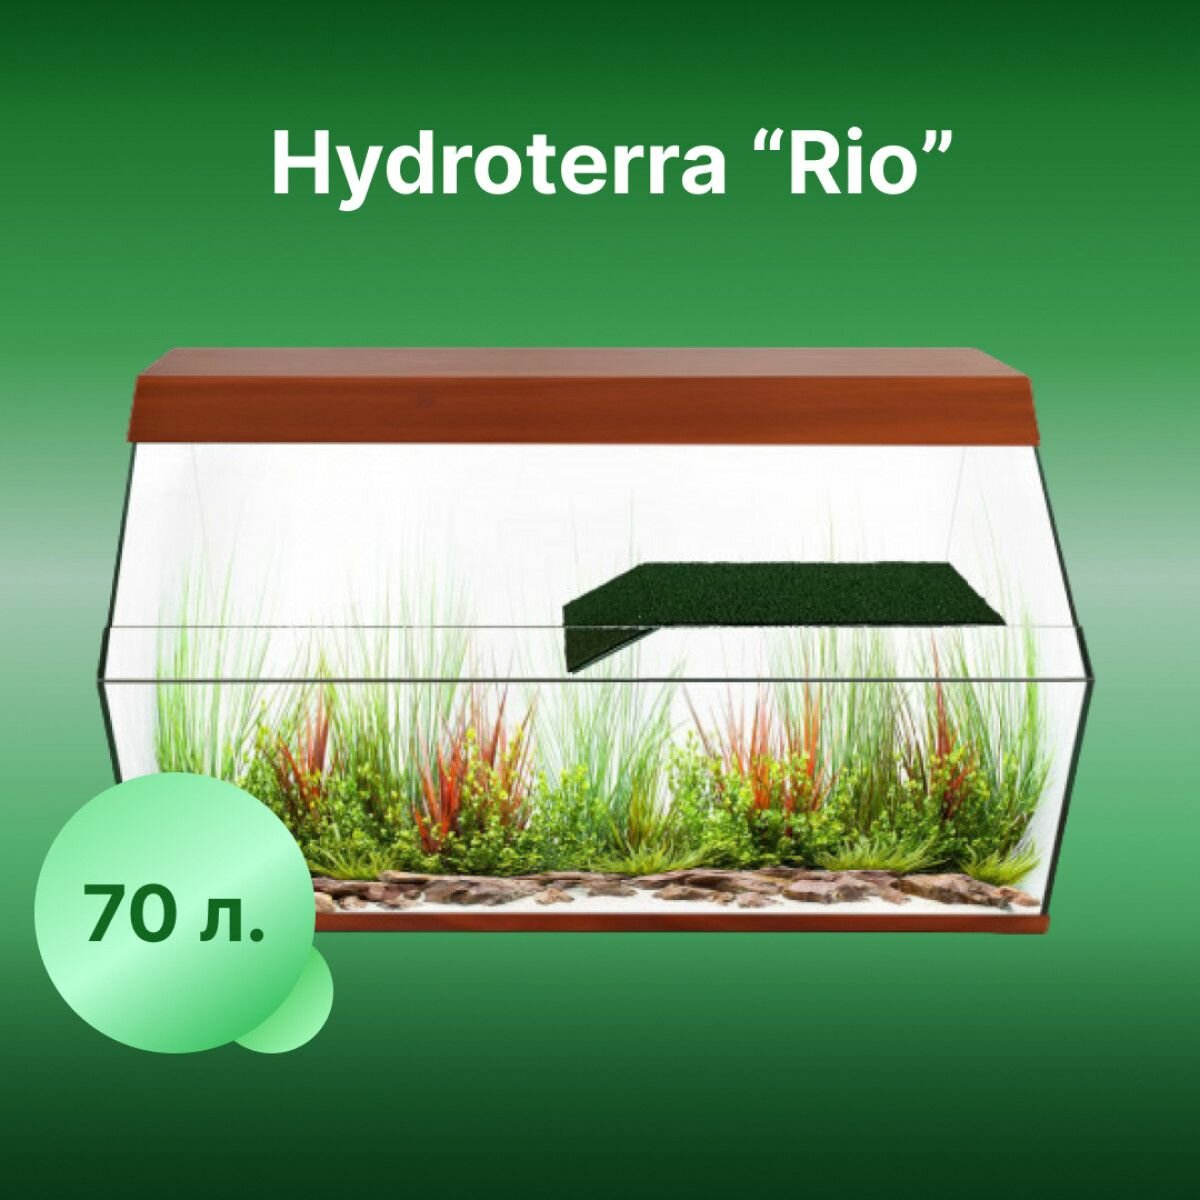 Акватеррариум Rio 70 литров коричневый для геккон, анолис, гуппи, ракообразных и жаб 500x290x360 мм - фотография № 1